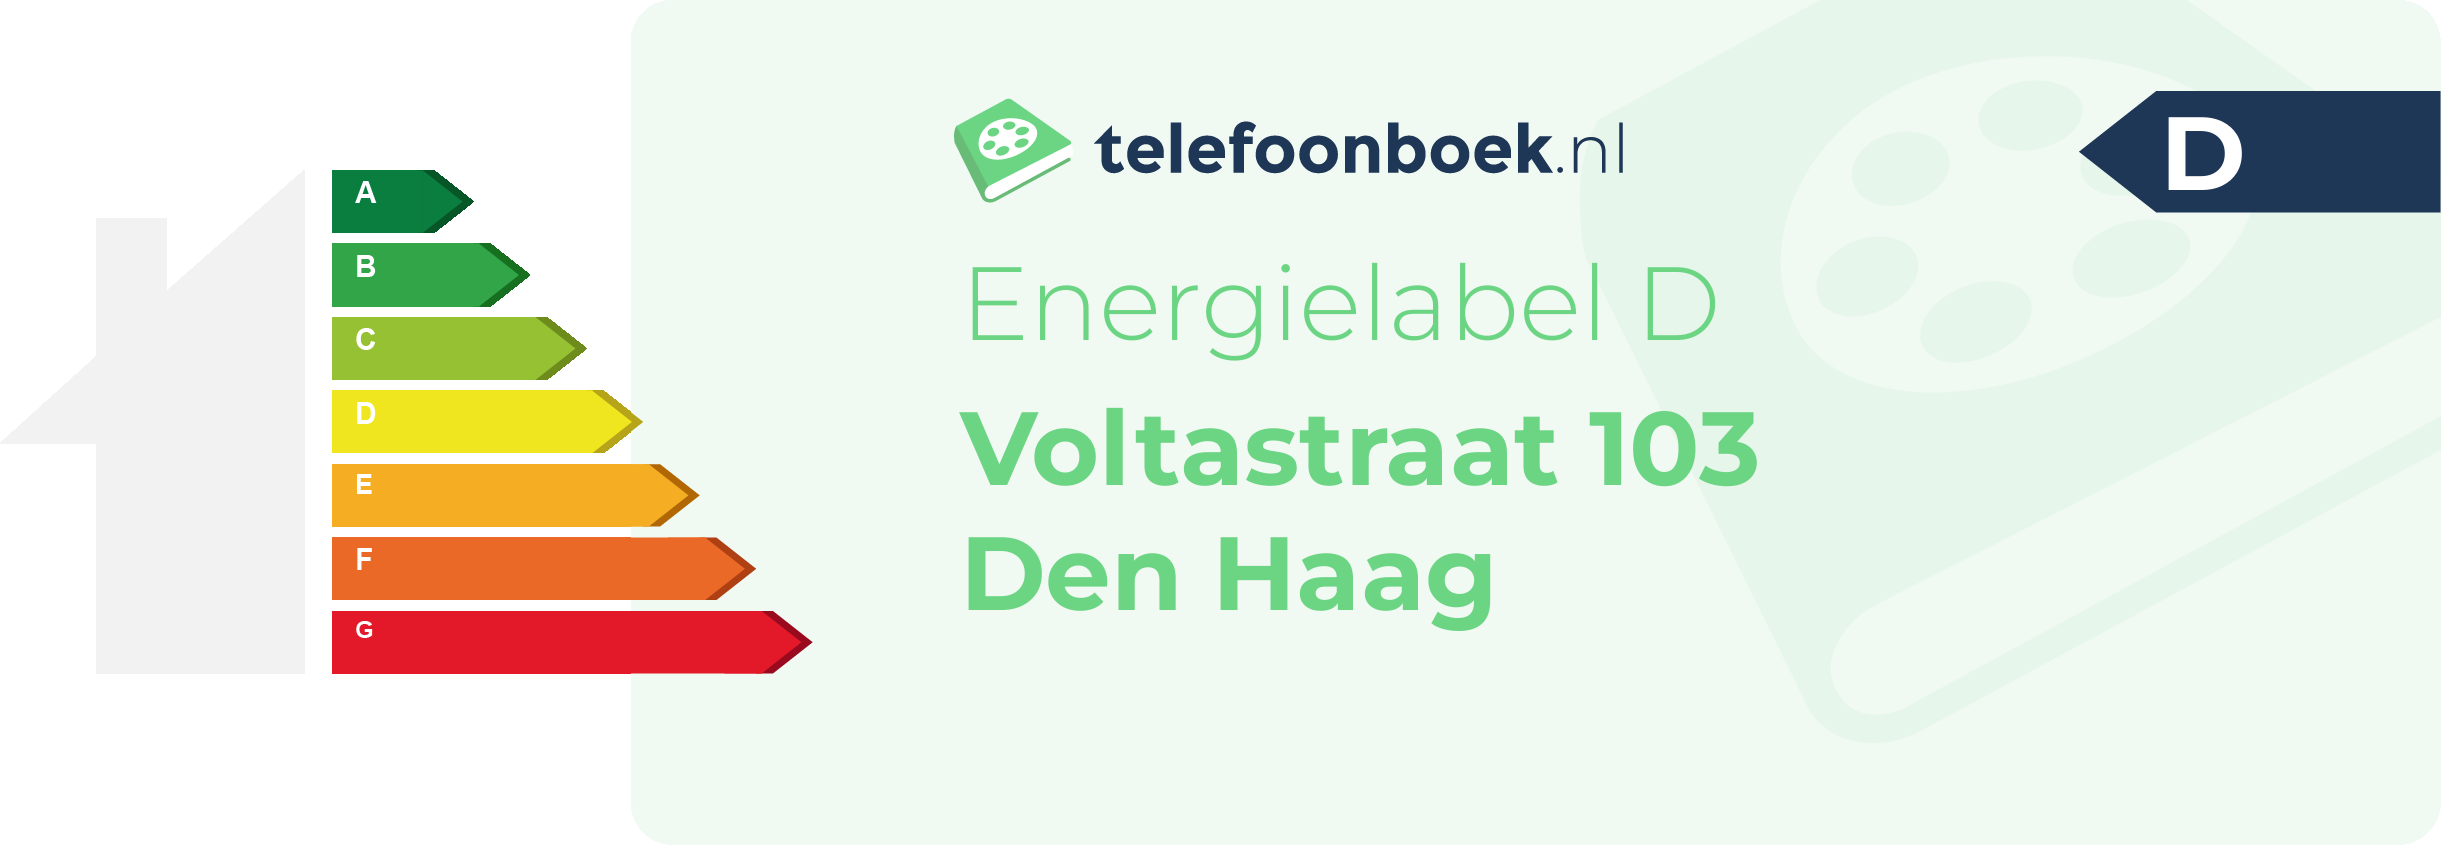 Energielabel Voltastraat 103 Den Haag